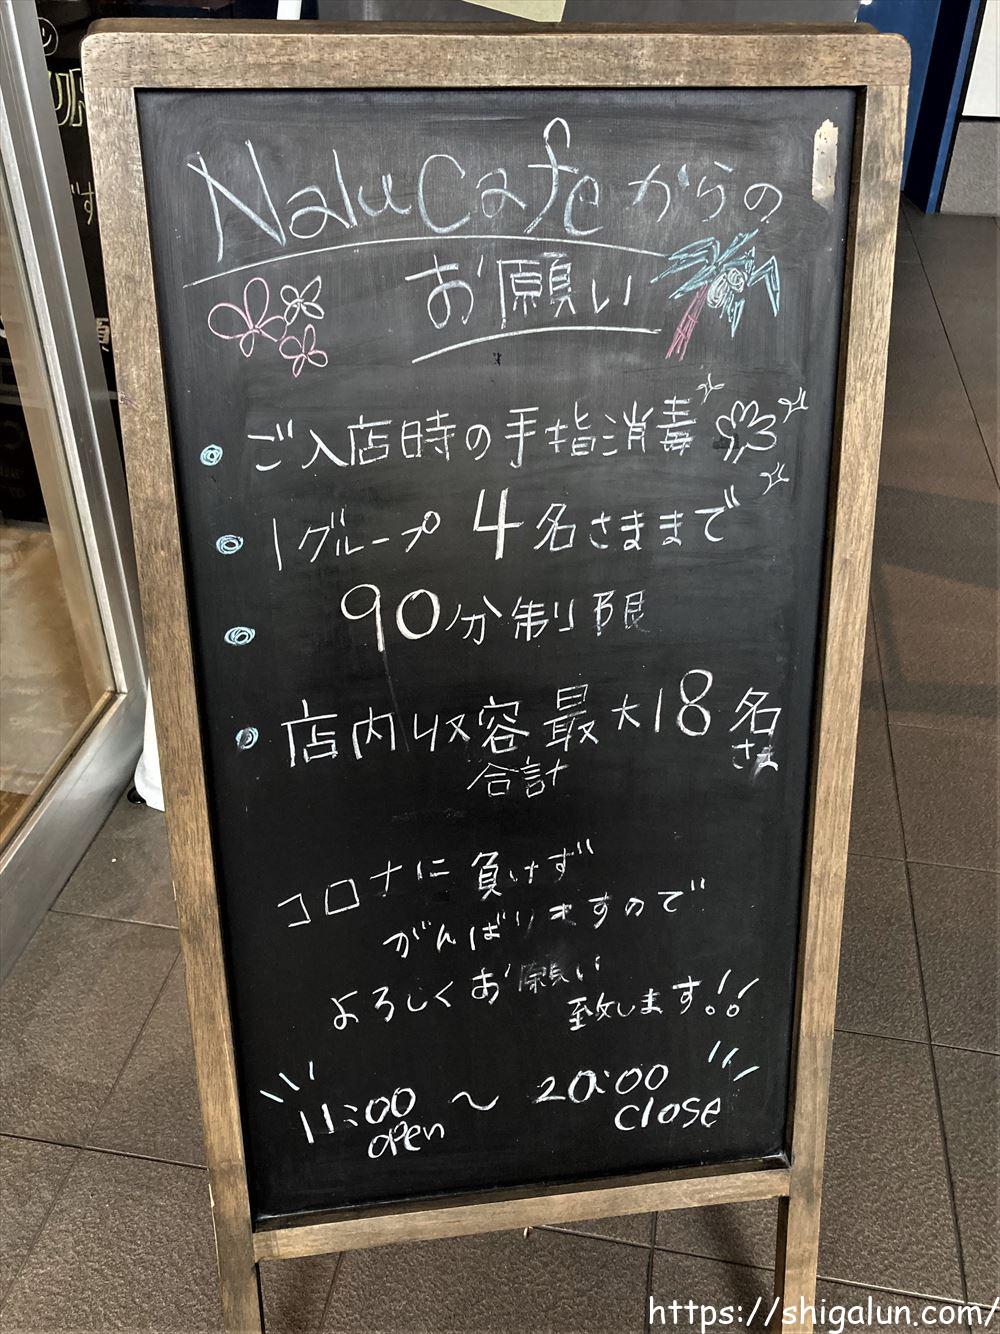 ナルカフェnalu cafe入店時のお願い